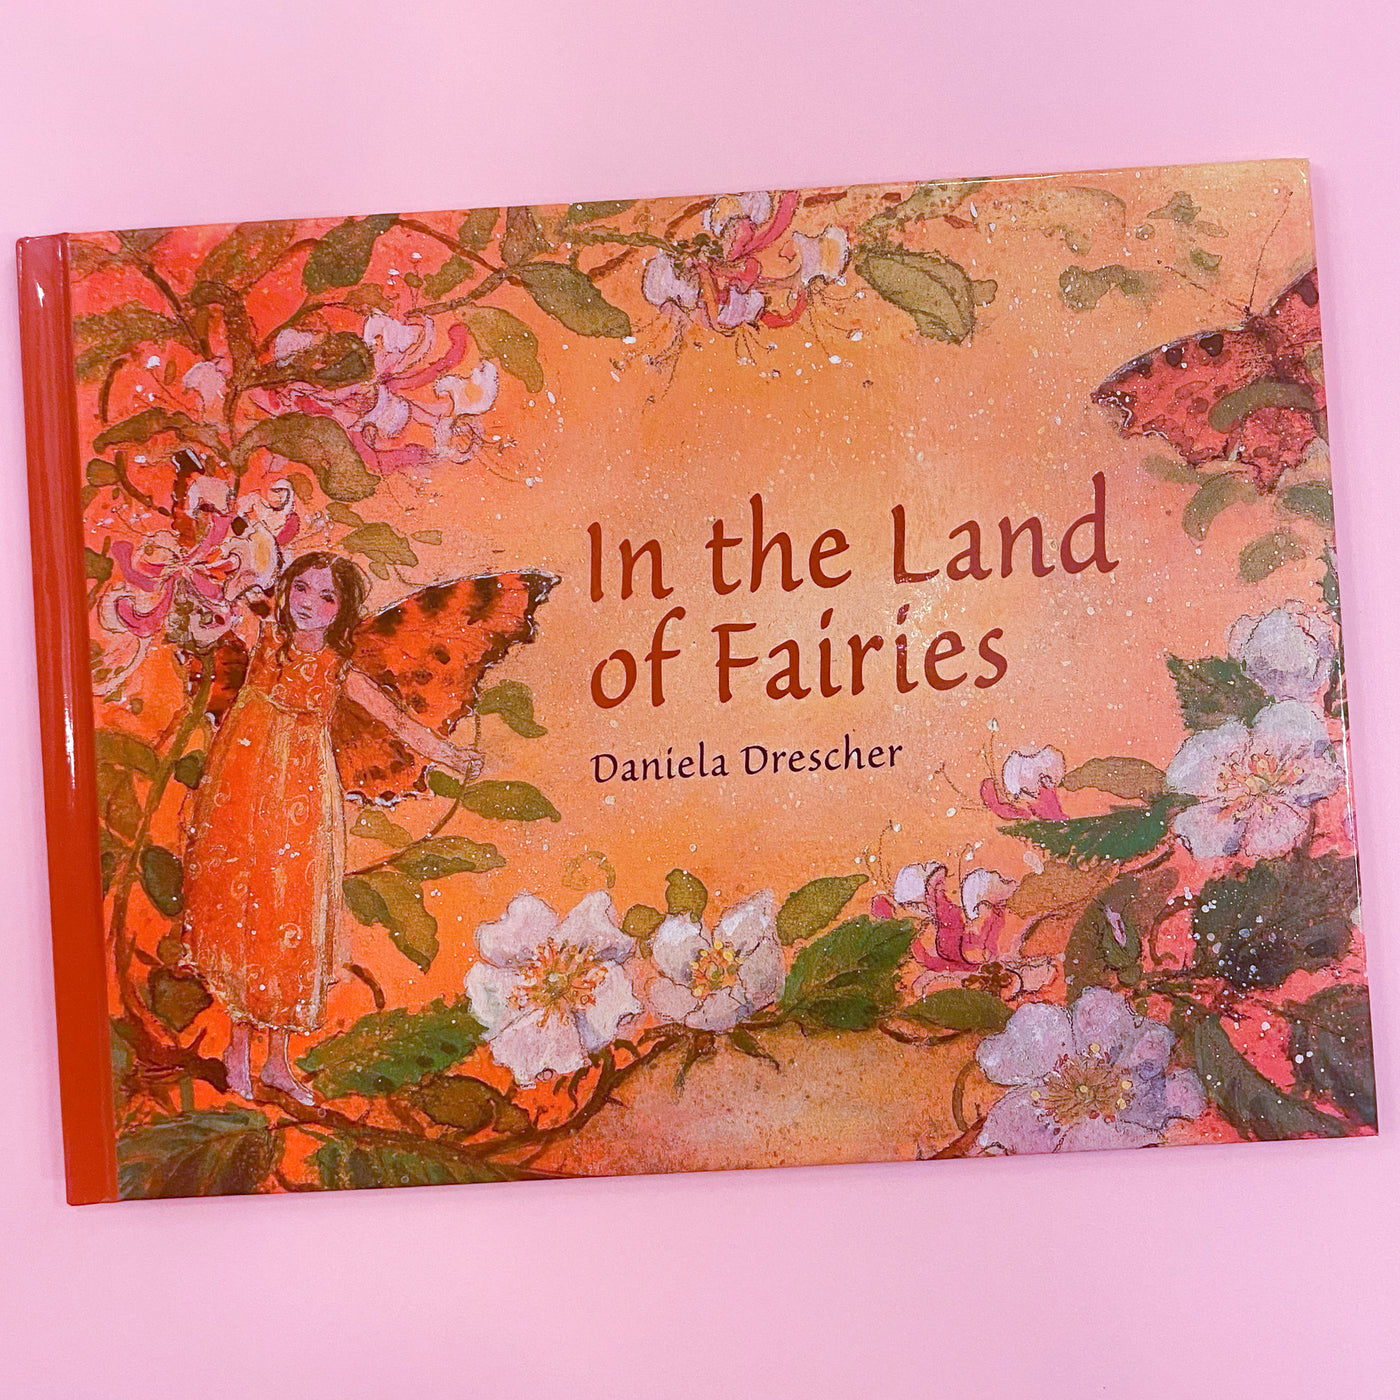 In The Land of Fairies by Daniela Drescher